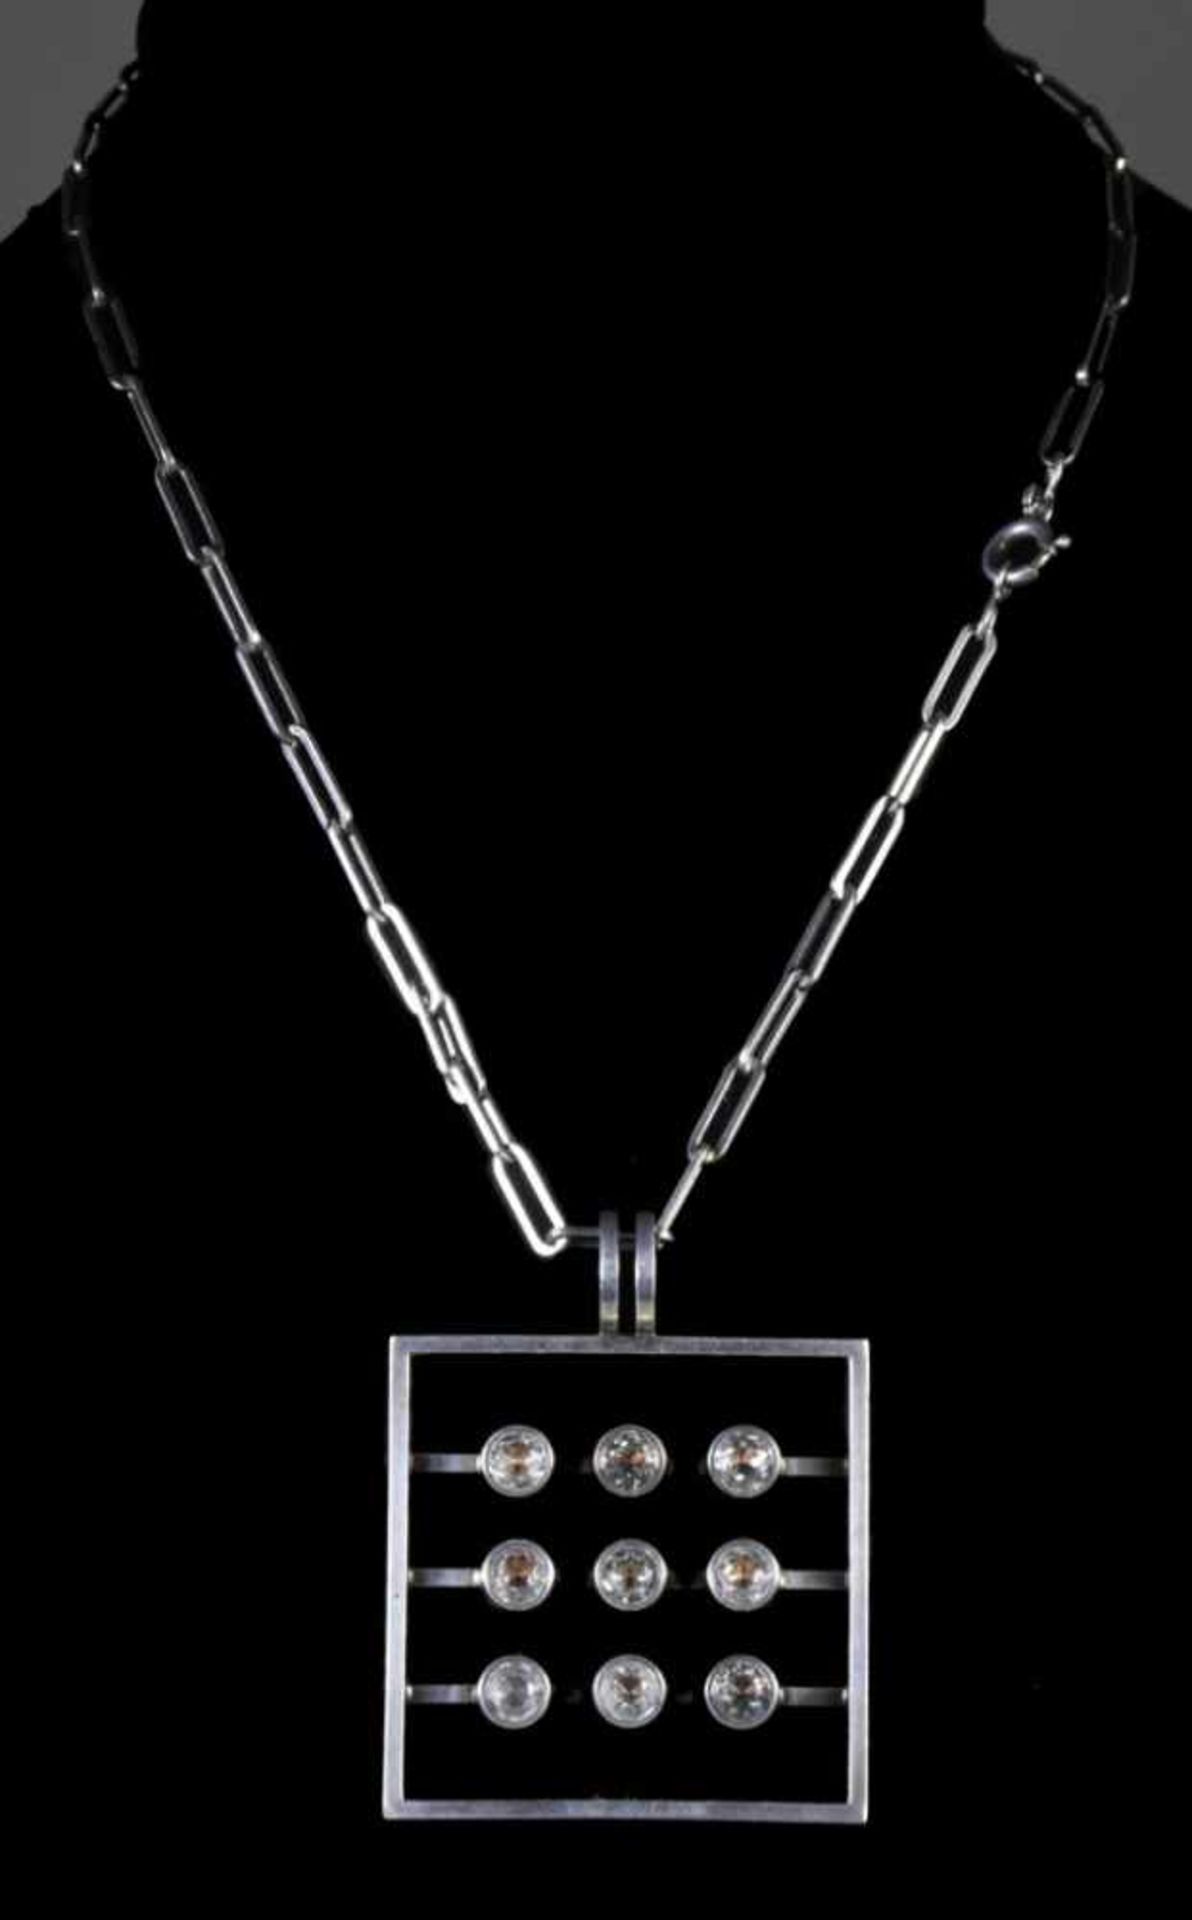 Kupittan Kulta - Modernist necklace - Silver & rock crystal En argent, composé d'un pendentif de